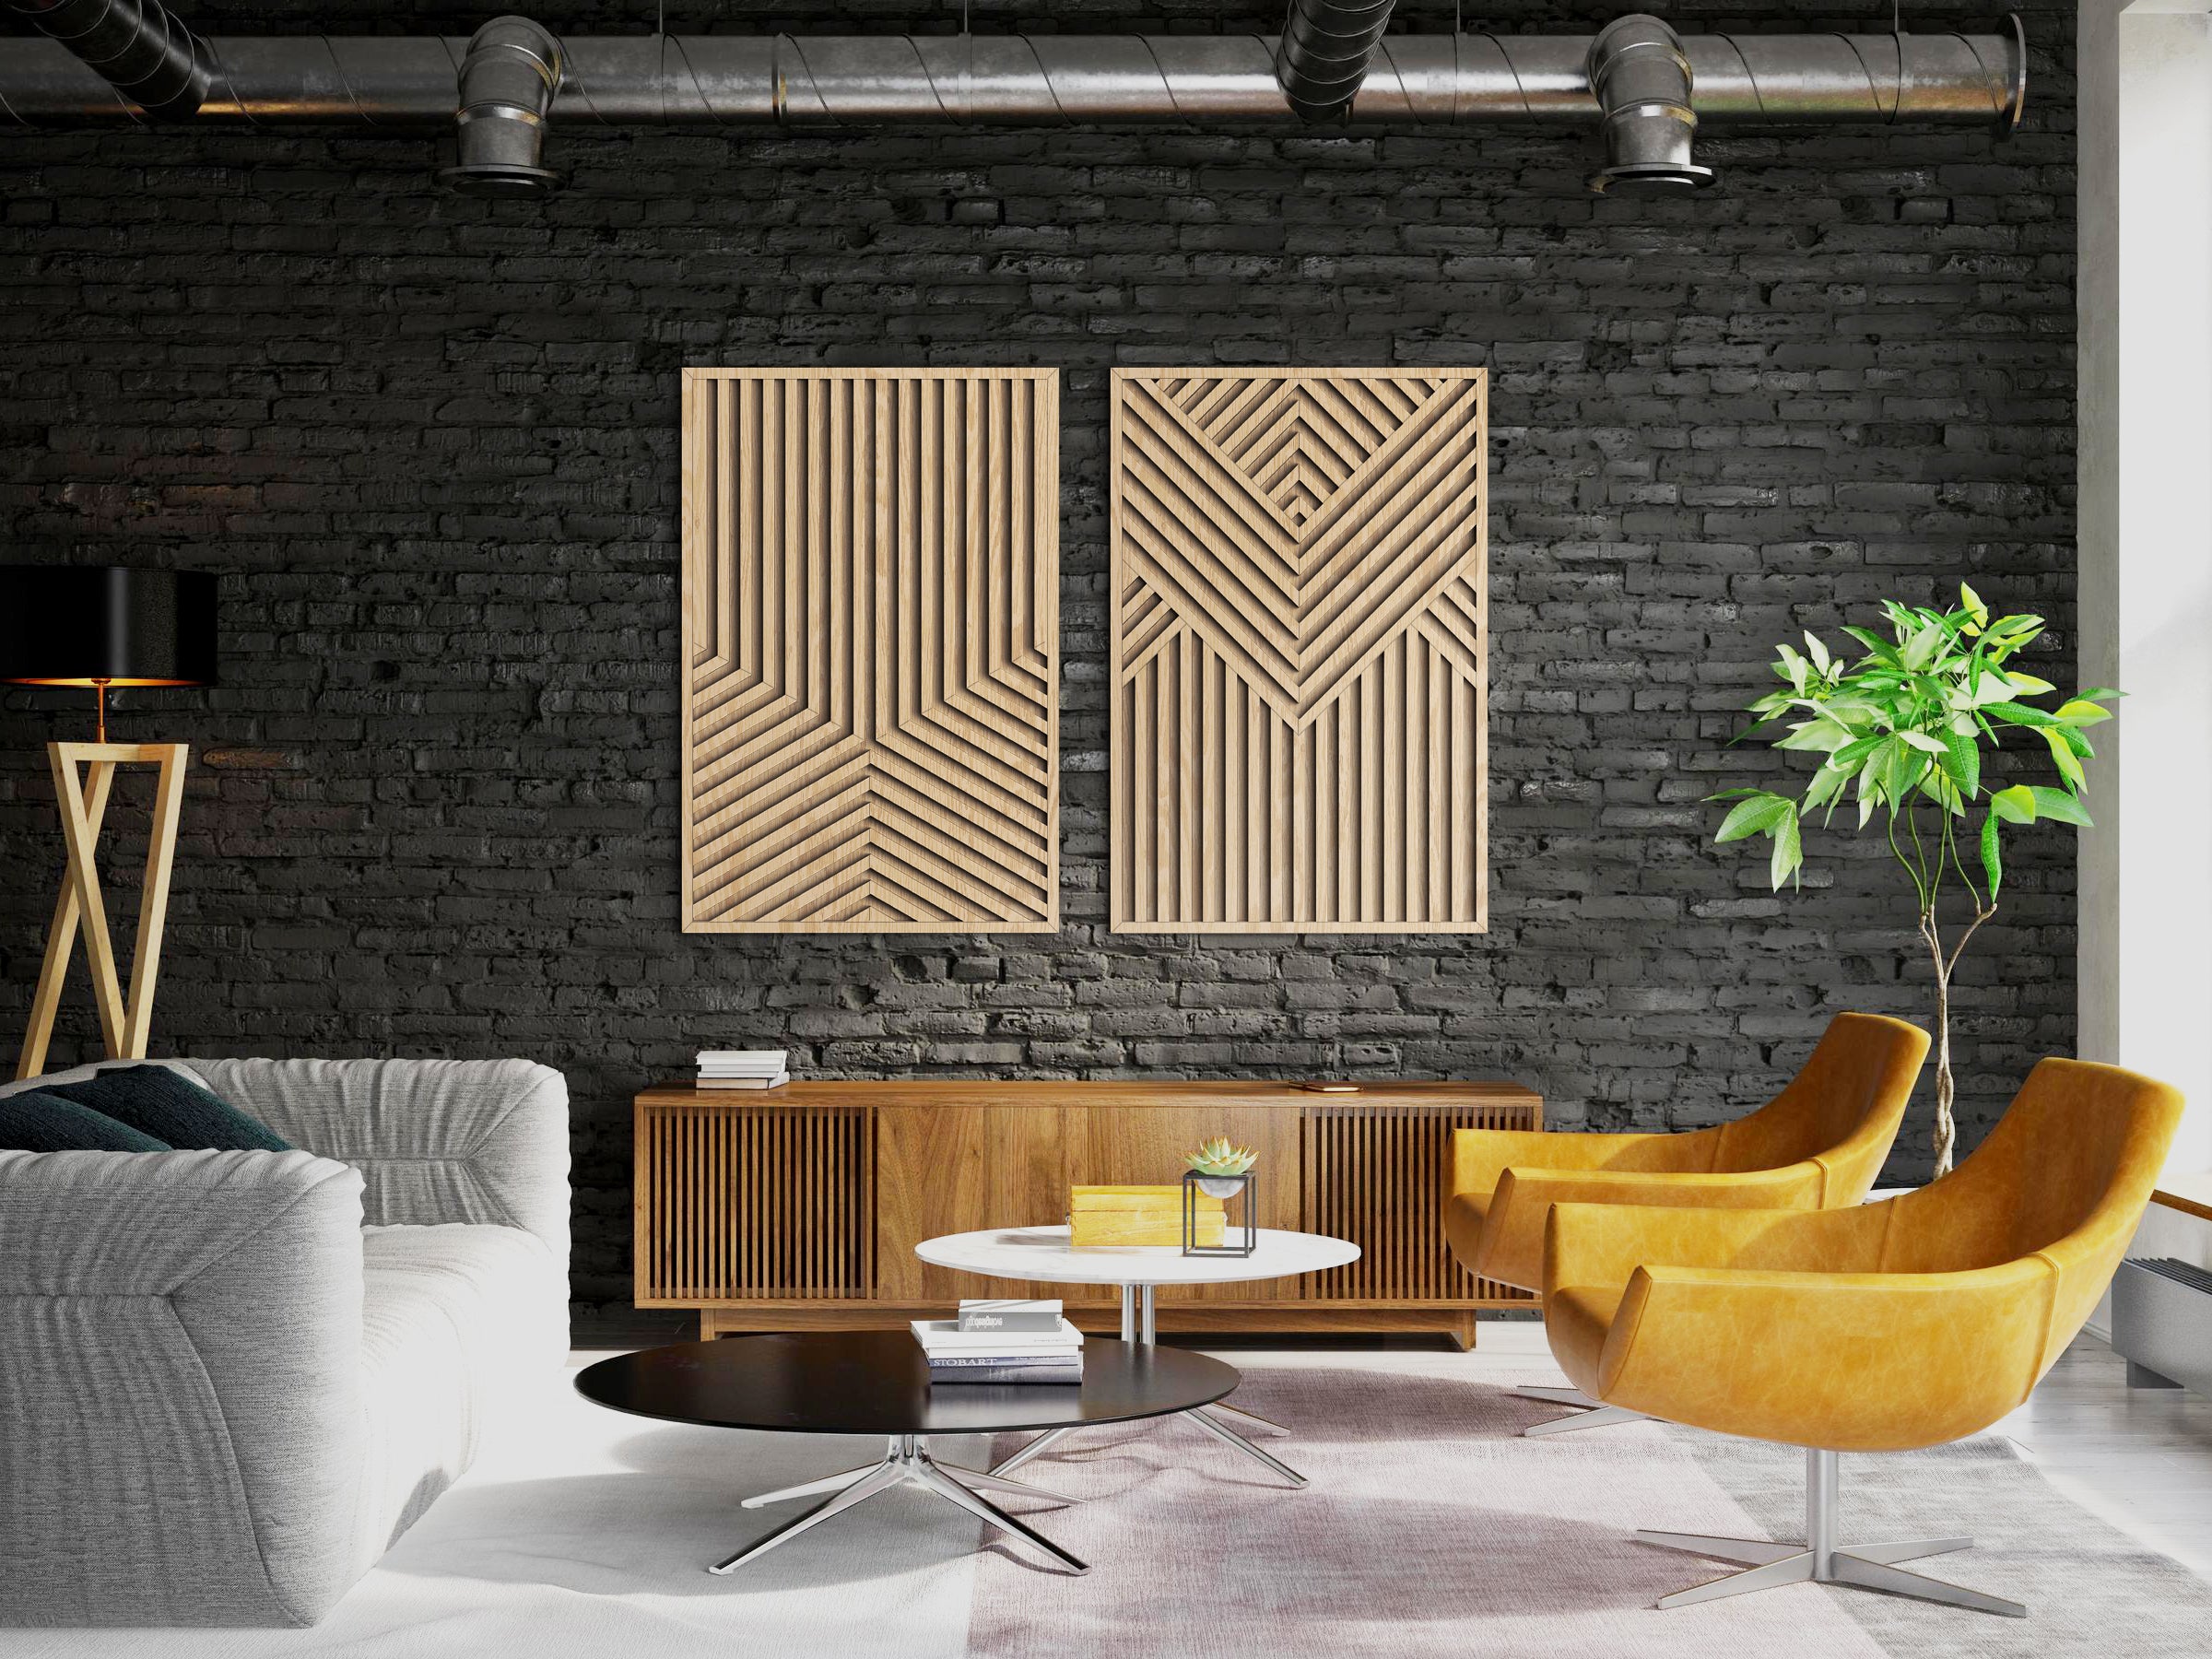 Wood wall art - Geometric wood wall decor - Minimalism wall art